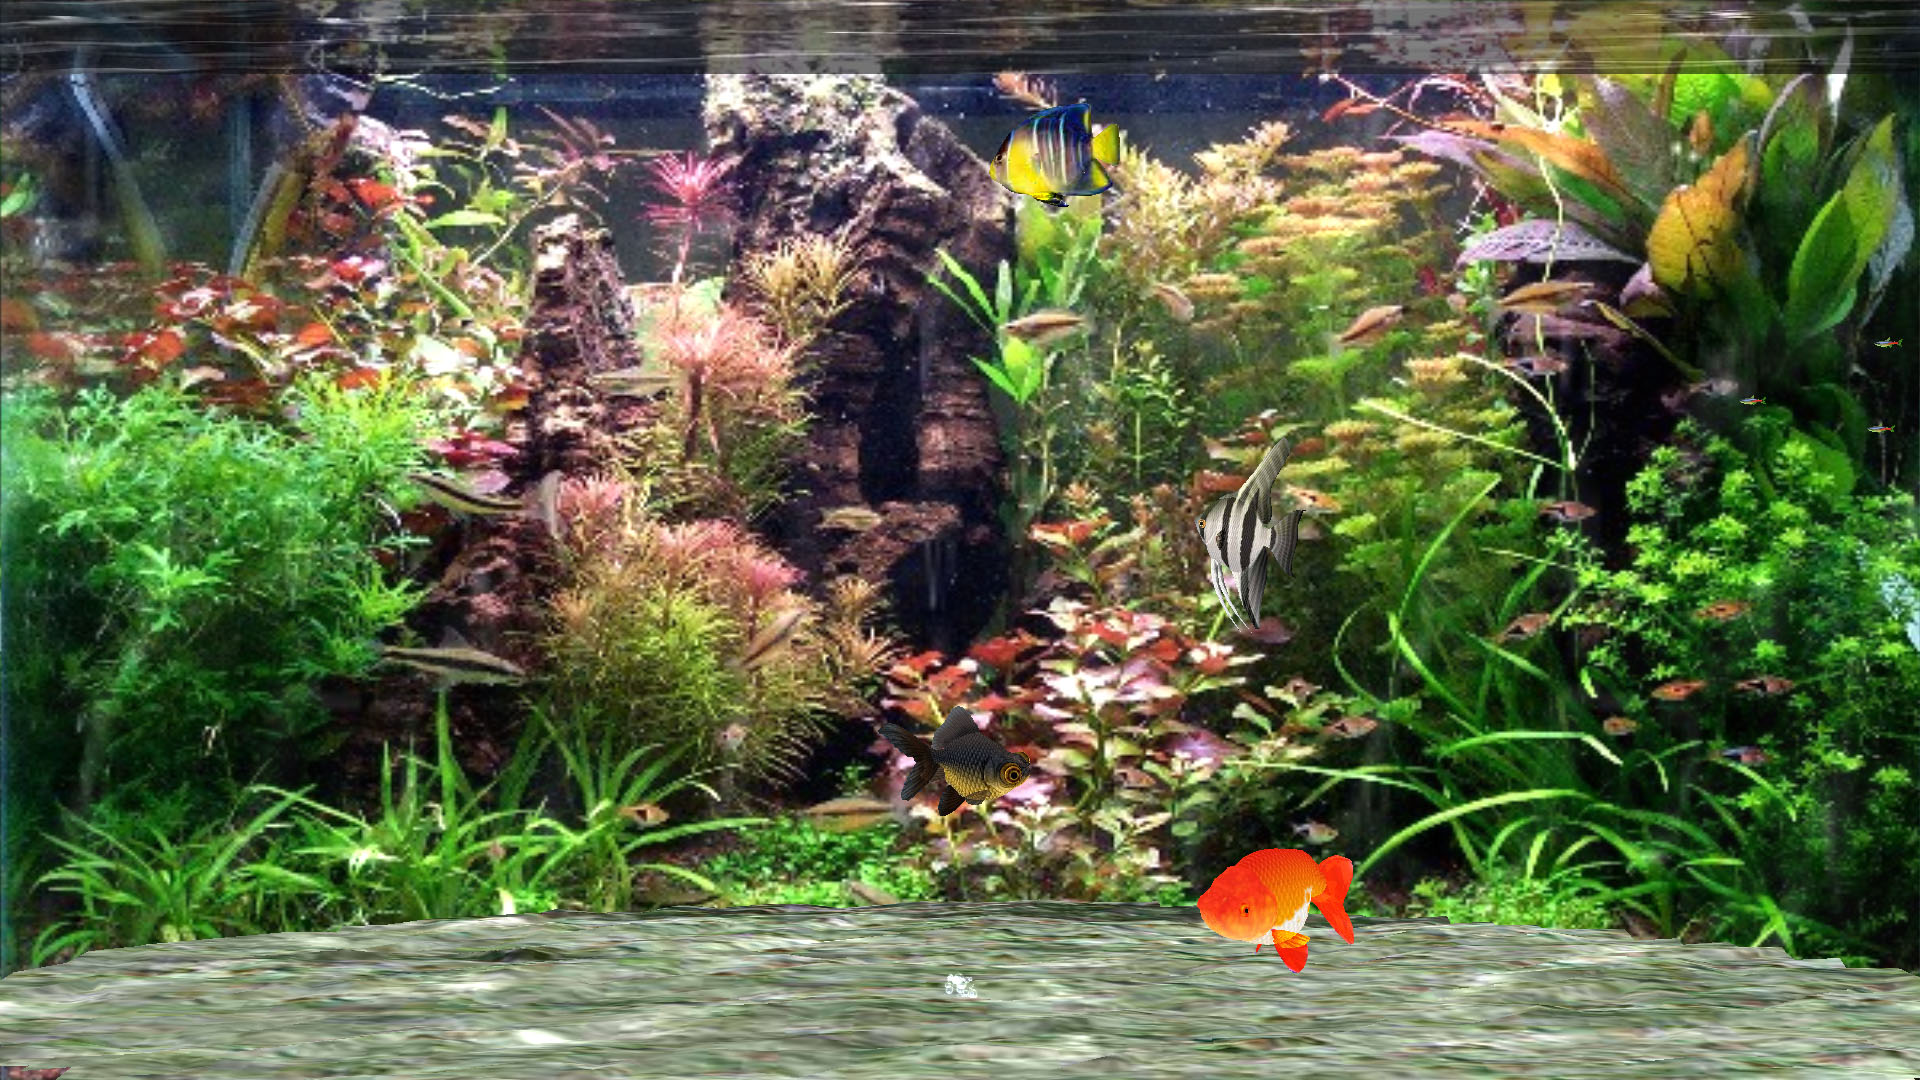 Aquarium Screensaver for Windows 10 - Fantastic Aquarium 3D Screensaver -  